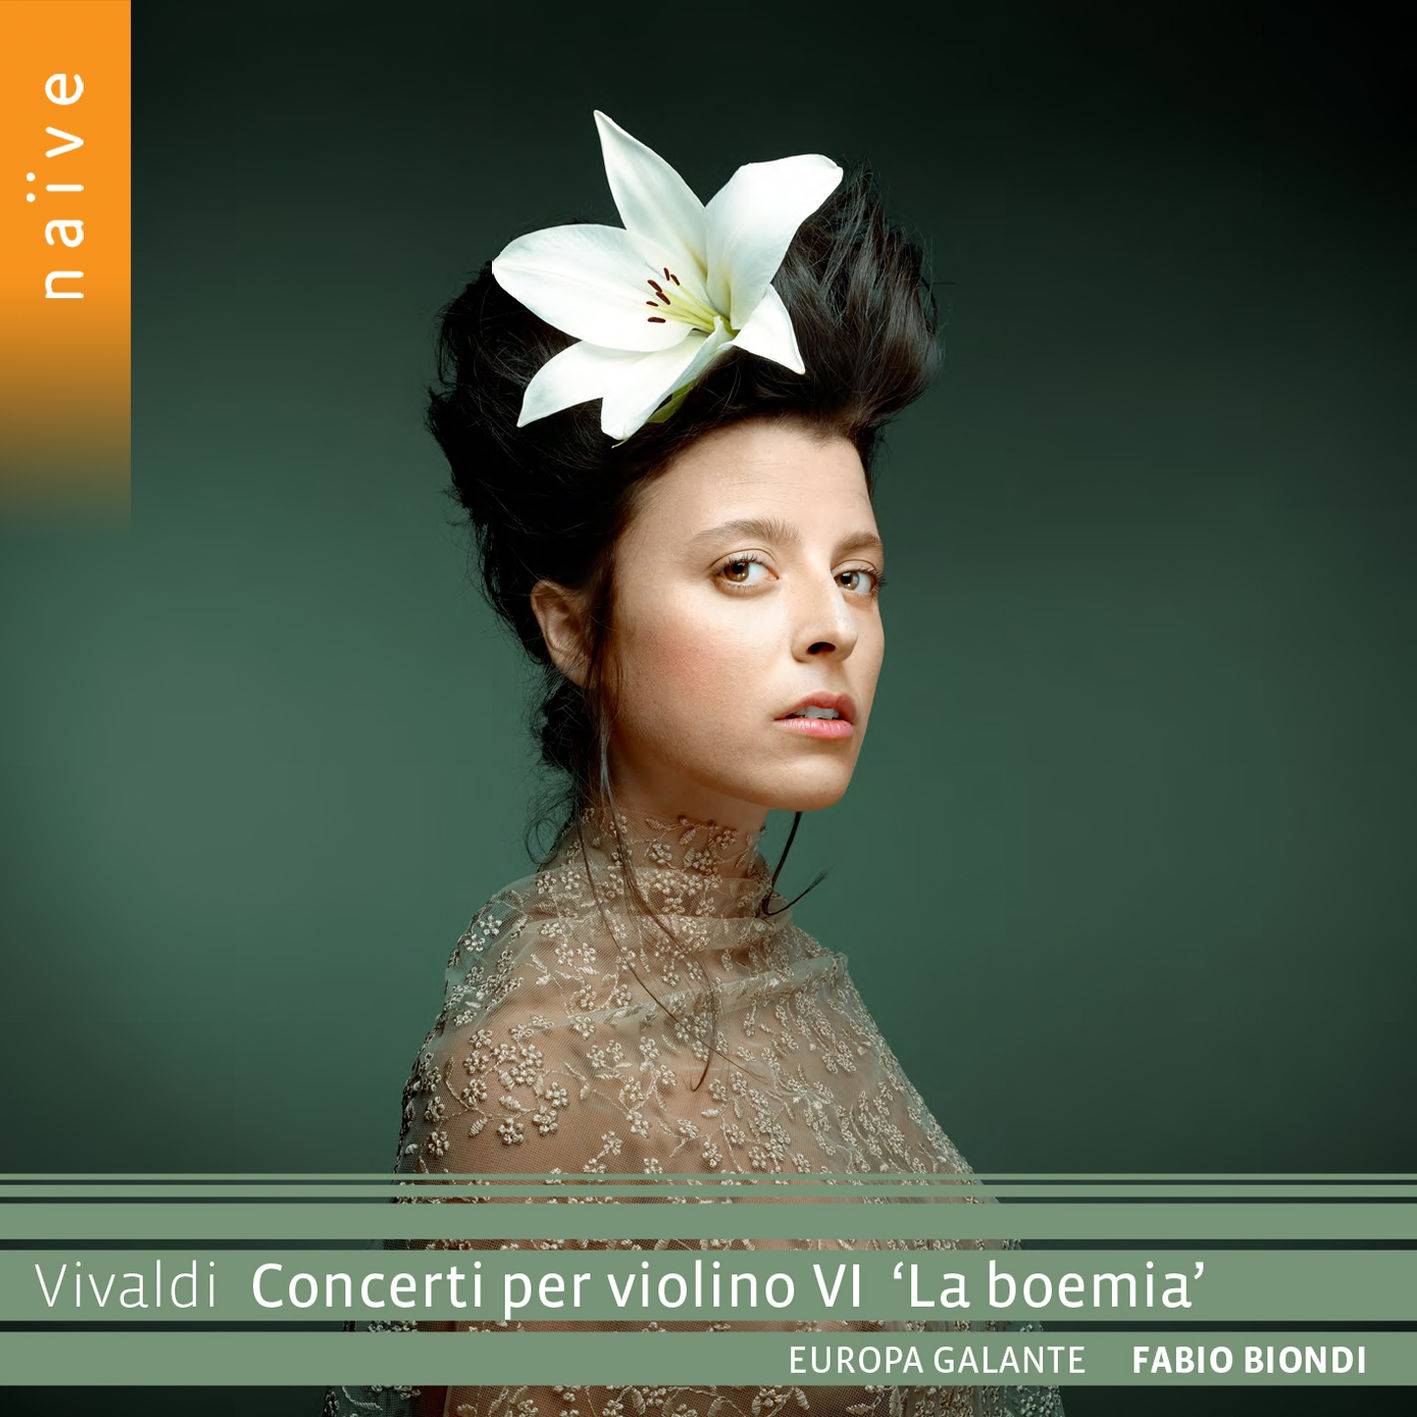 Fabio Biondi, Europa Galante - Vivaldi: Concerti per violino VI "La boemia" (2018) [FLAC 24bit/88,2kHz]